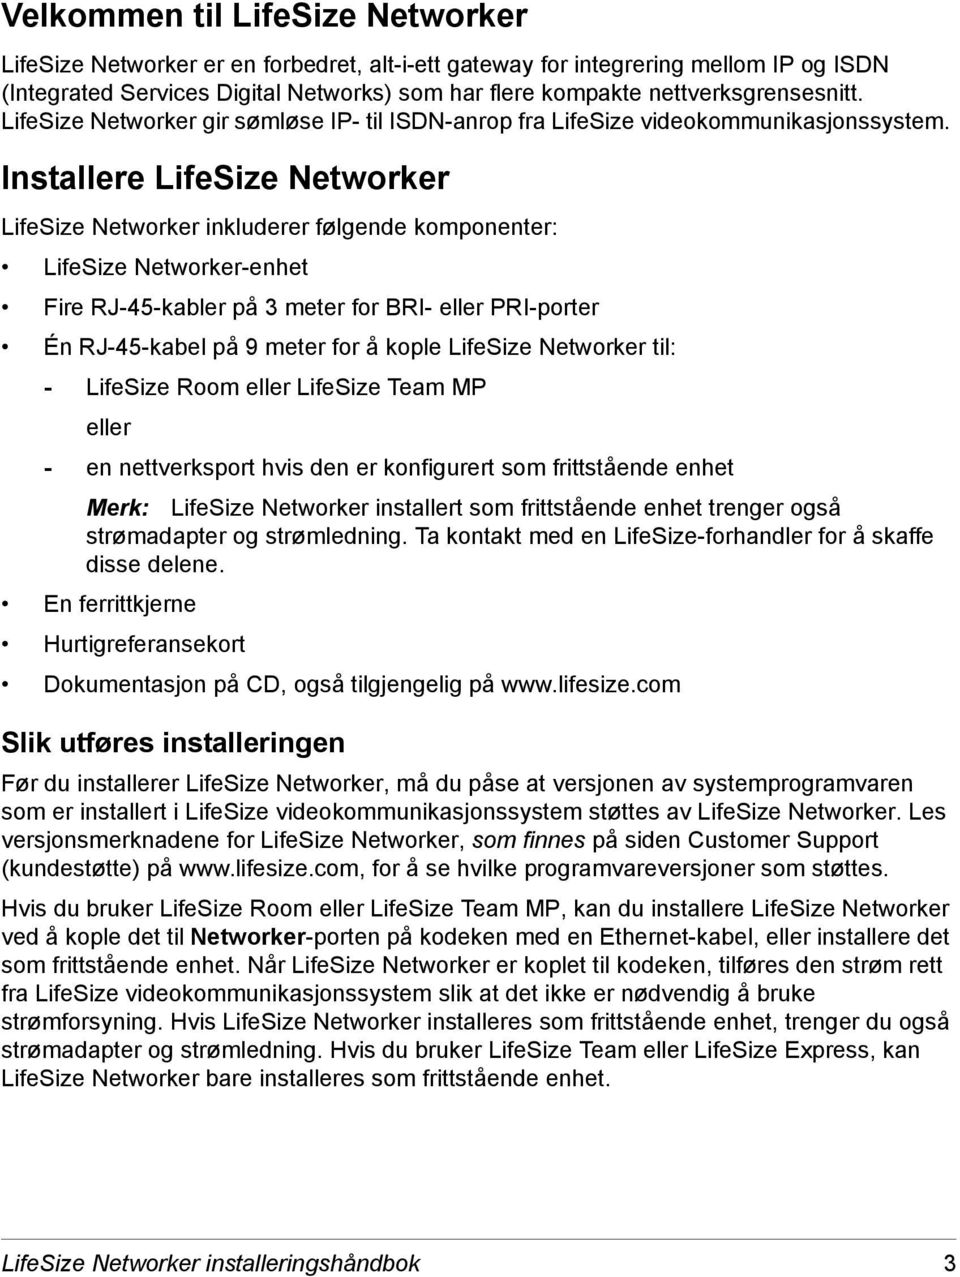 Installere LifeSize Networker LifeSize Networker inkluderer følgende komponenter: LifeSize Networker-enhet Fire RJ-45-kabler på 3 meter for BRI- eller PRI-porter Én RJ-45-kabel på 9 meter for å kople